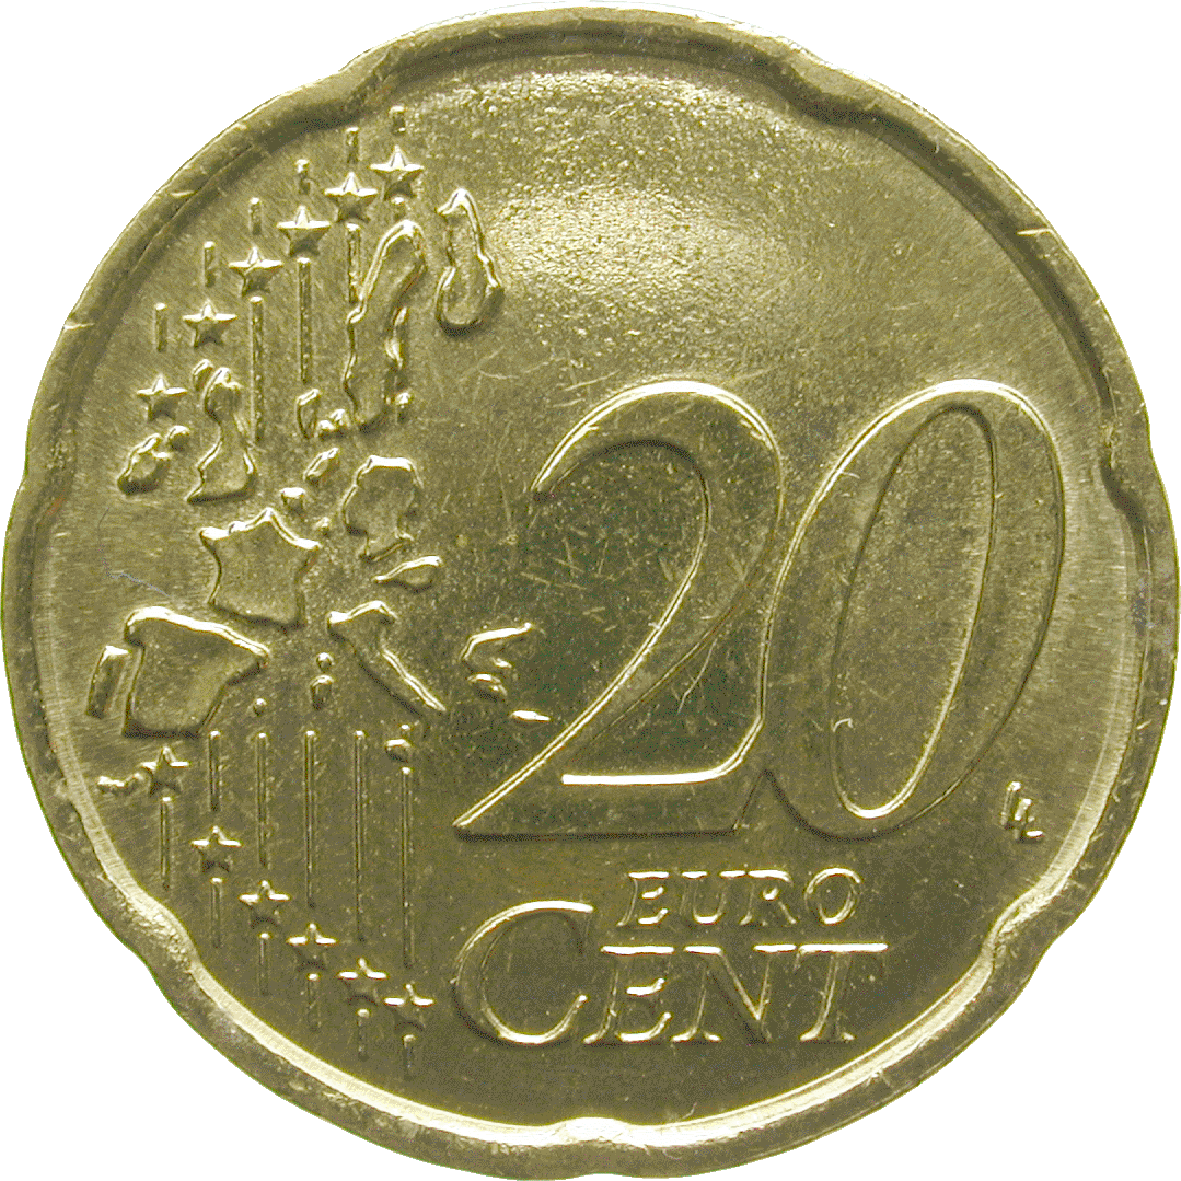 Republik San Marino, 20 Eurocent 2008 (obverse)